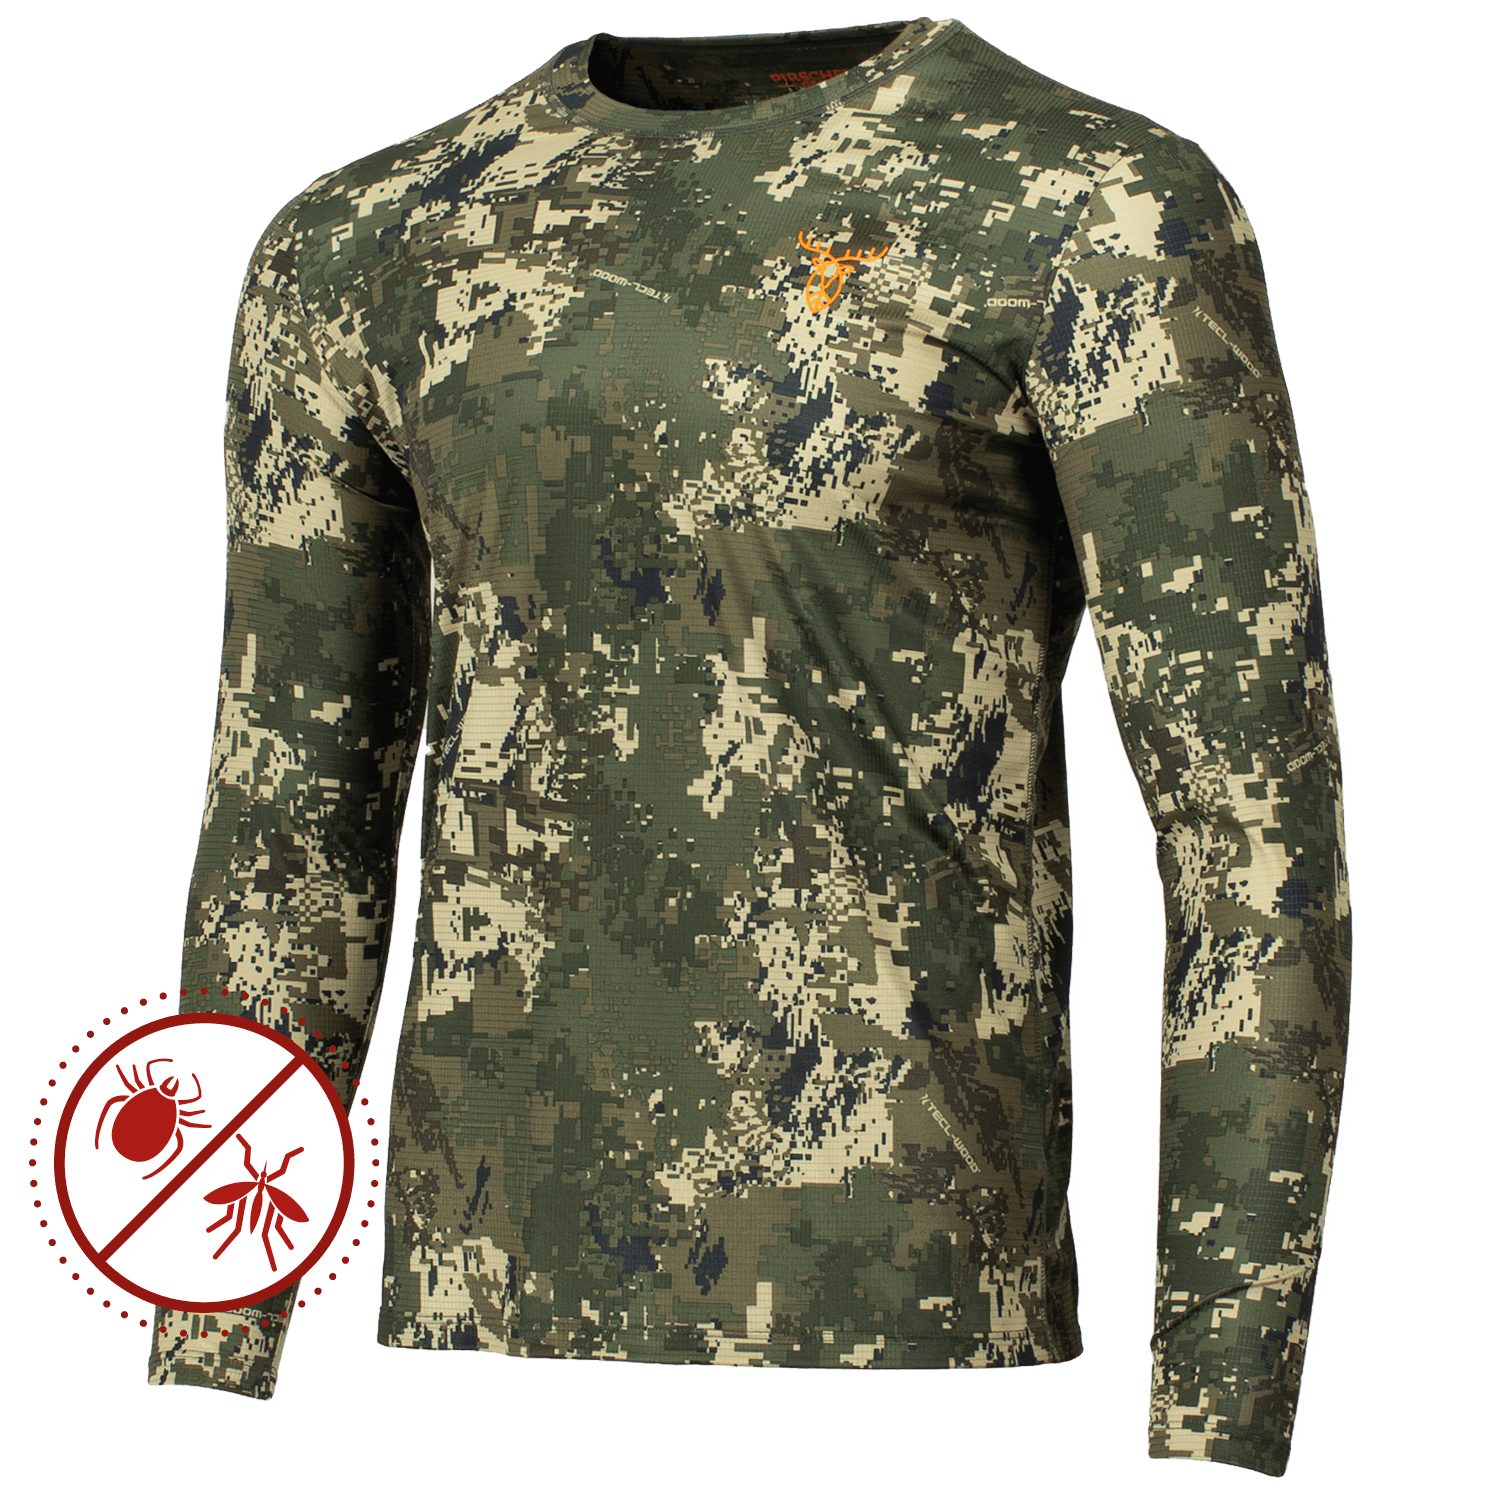  Pirscher Gear Ultralicht Tanatex LS Shirt (Optimax) - Camouflage Kleding